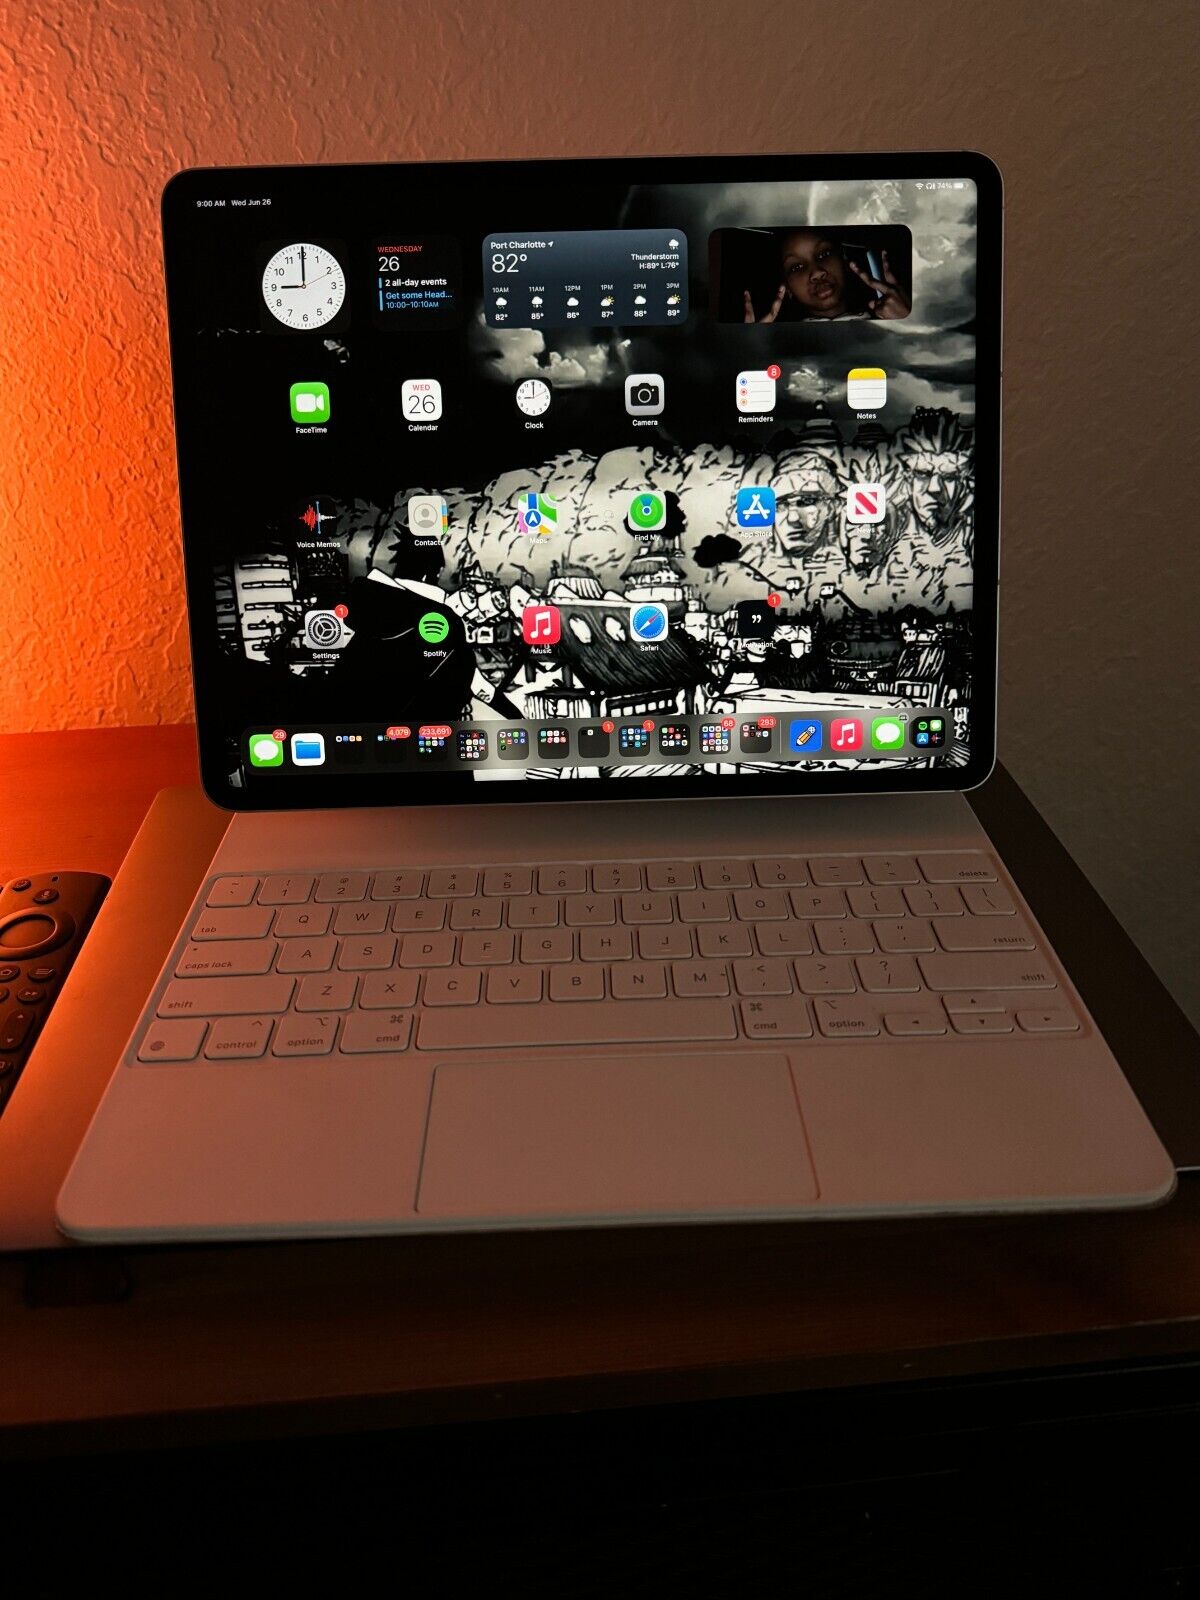 Apple iPad Pro 5th Gen 128GB, 5G (Unlocked), 12.9 in - Silver w/ Keyboard + Pen